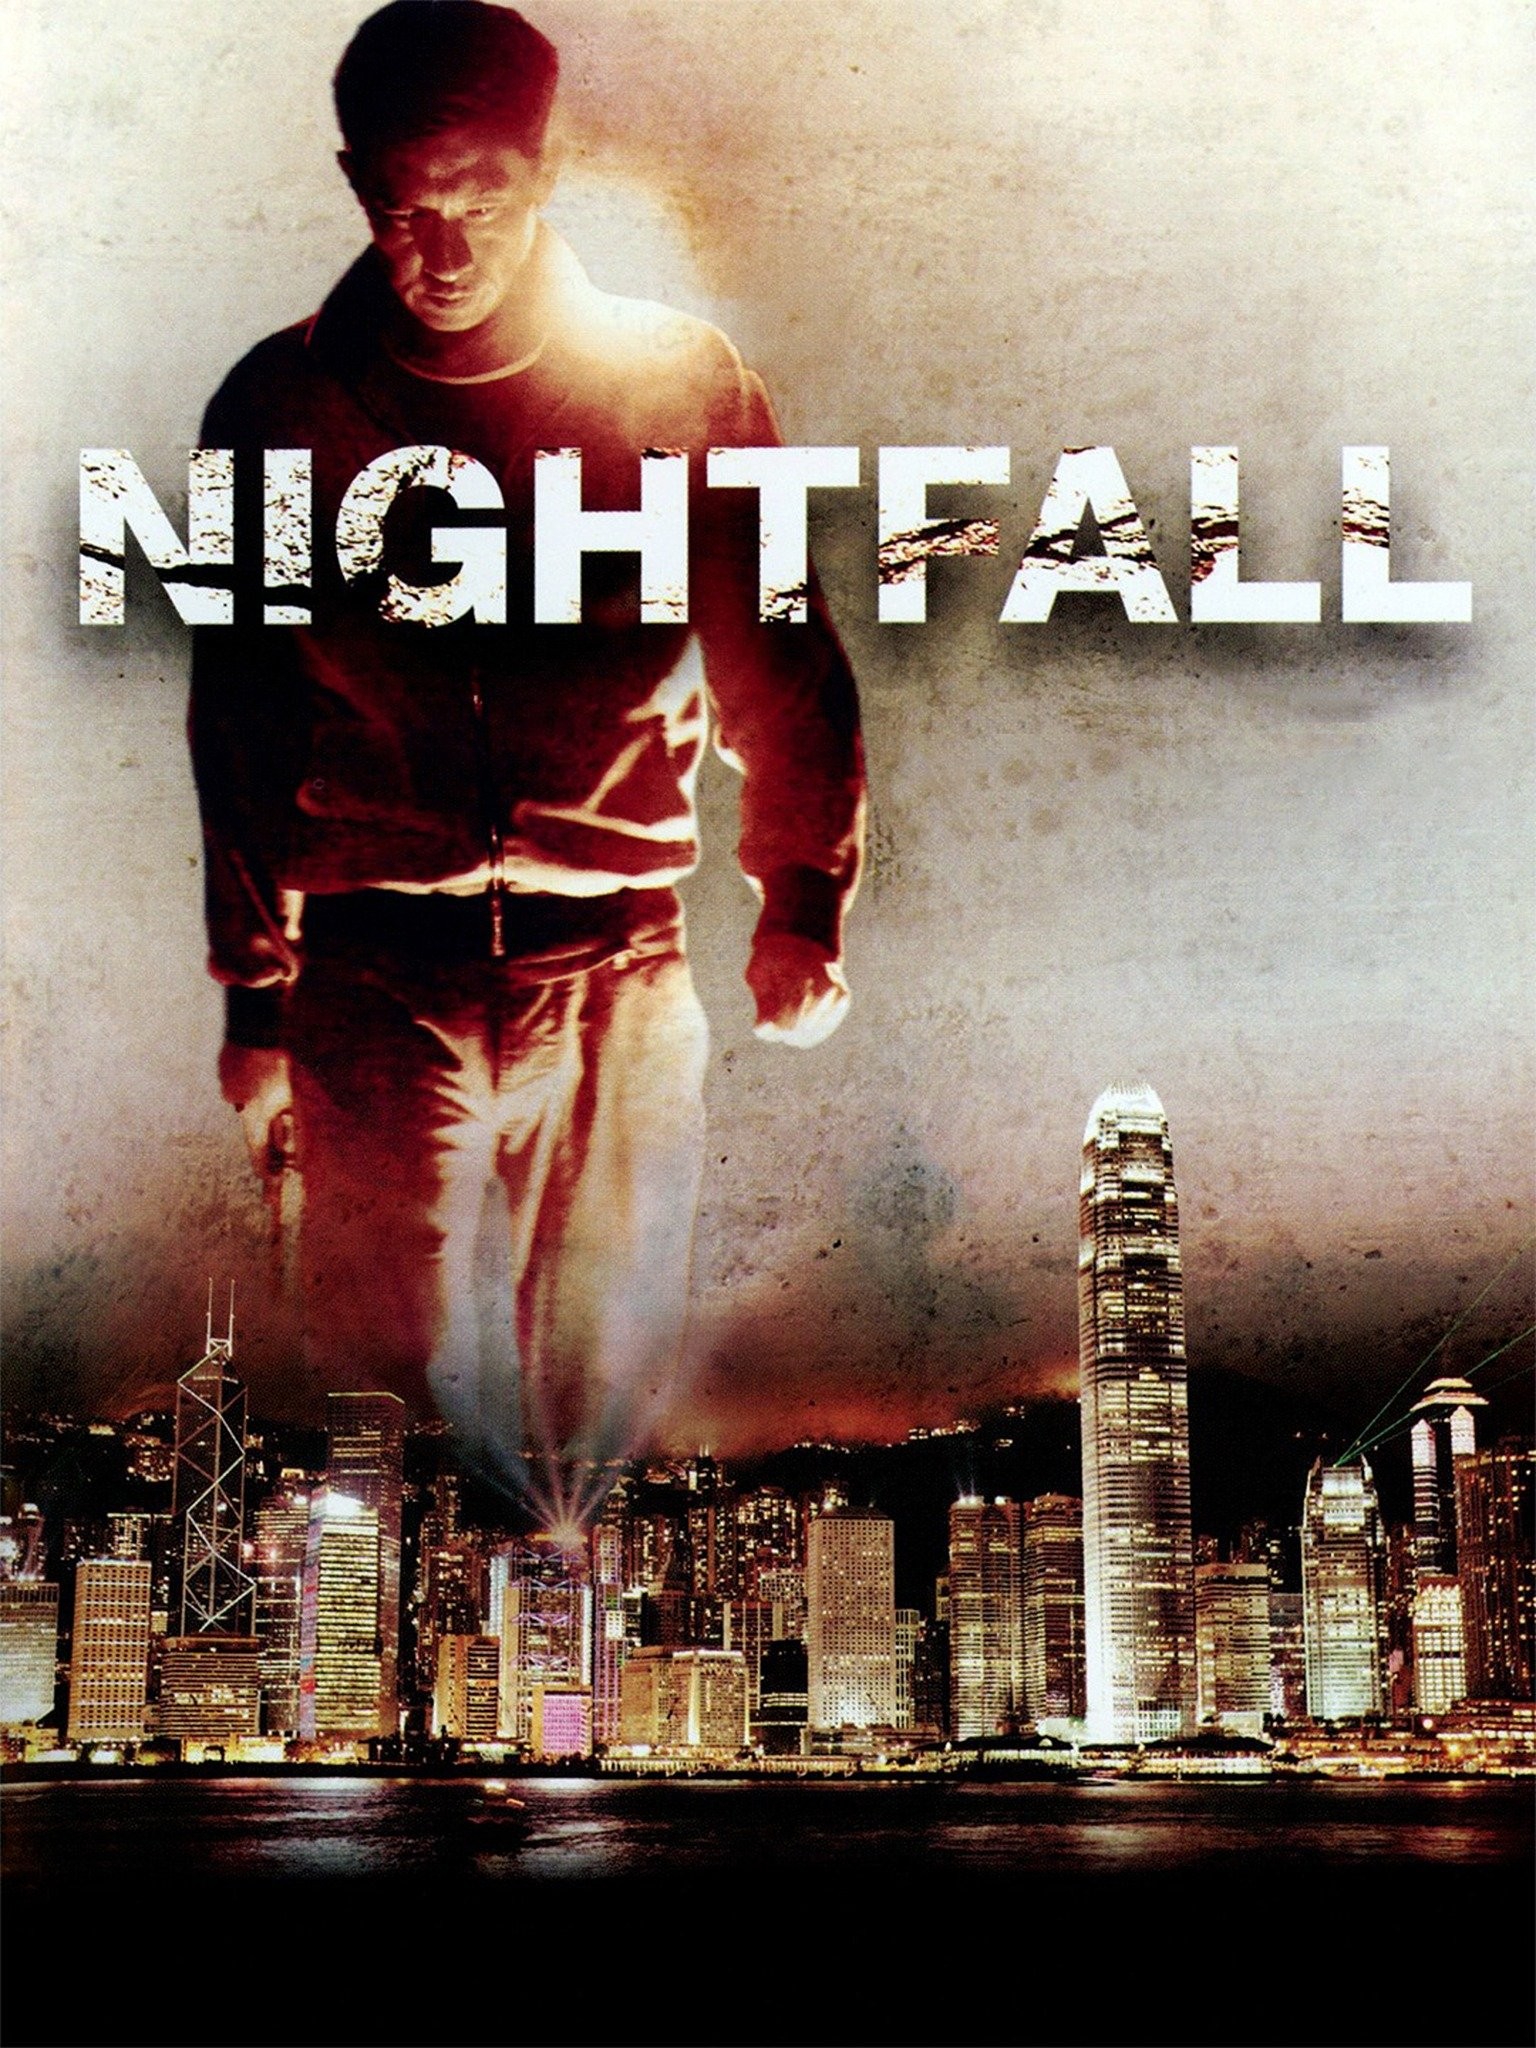 Halo: Nightfall - Rotten Tomatoes